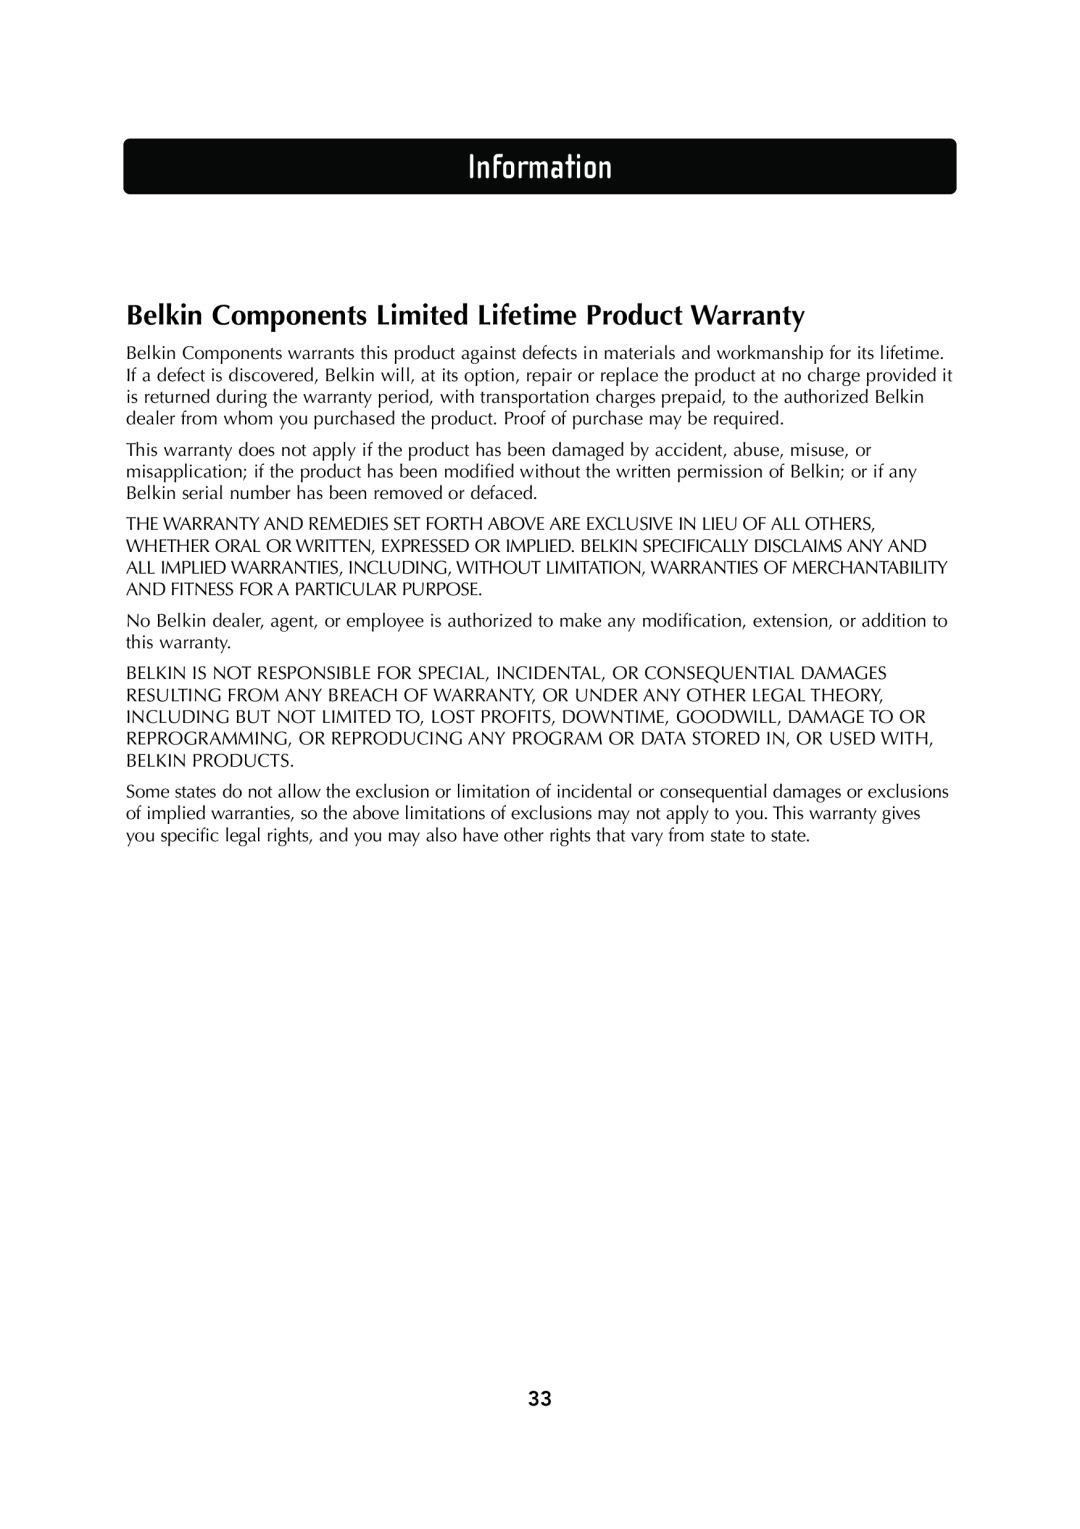 Belkin F5D6130 user manual Belkin Components Limited Lifetime Product Warranty, Information 